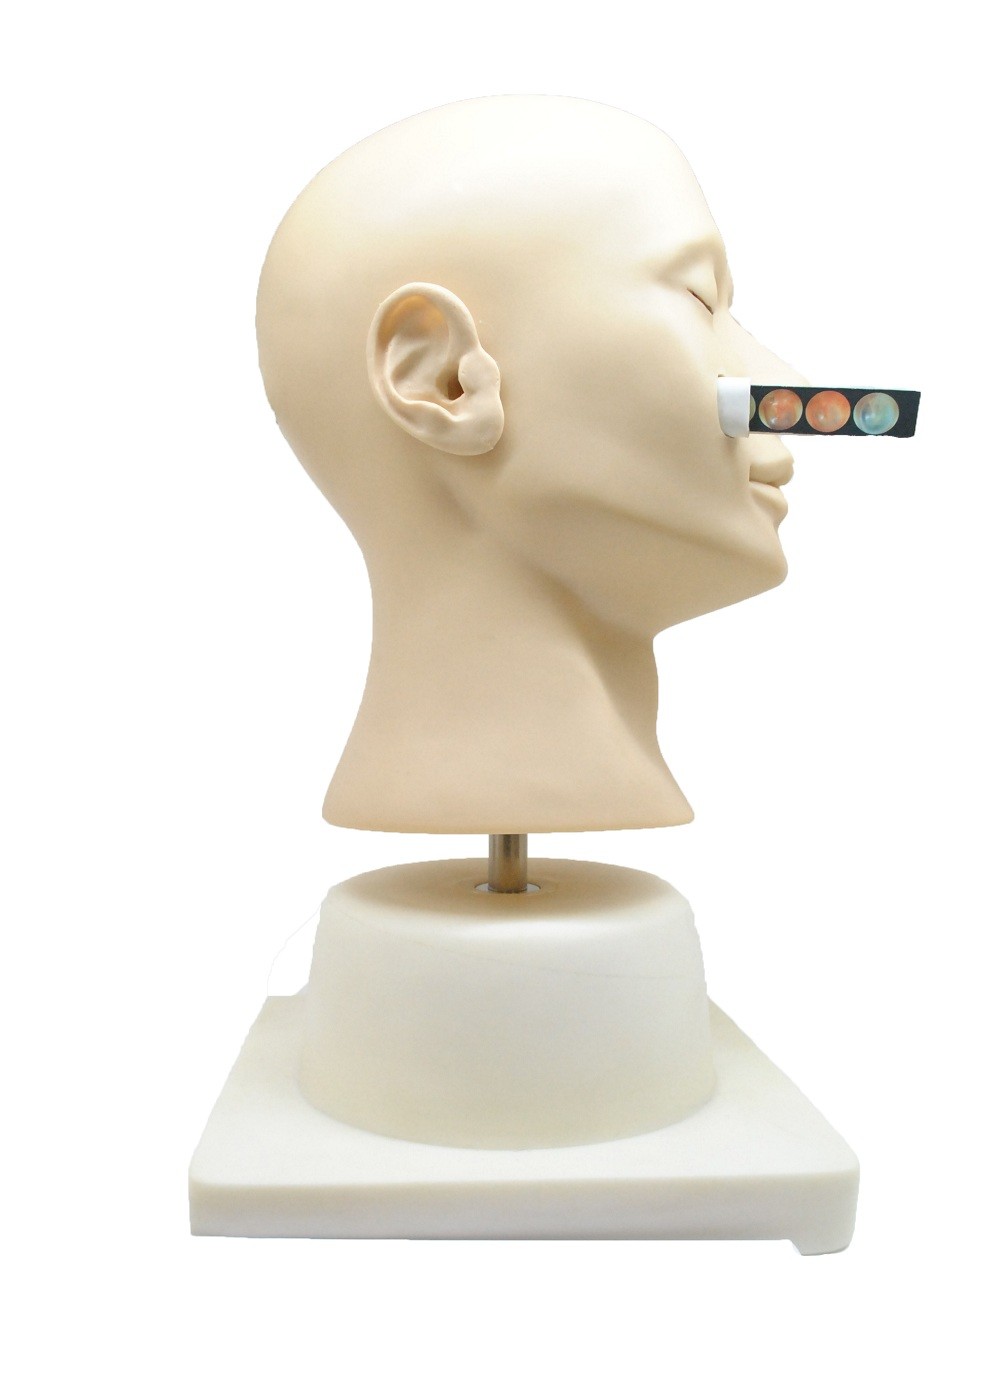 Bambola nasale di addestramento di emorragia di simulazione clinica avanzata per l'istituto universitario, ospedale